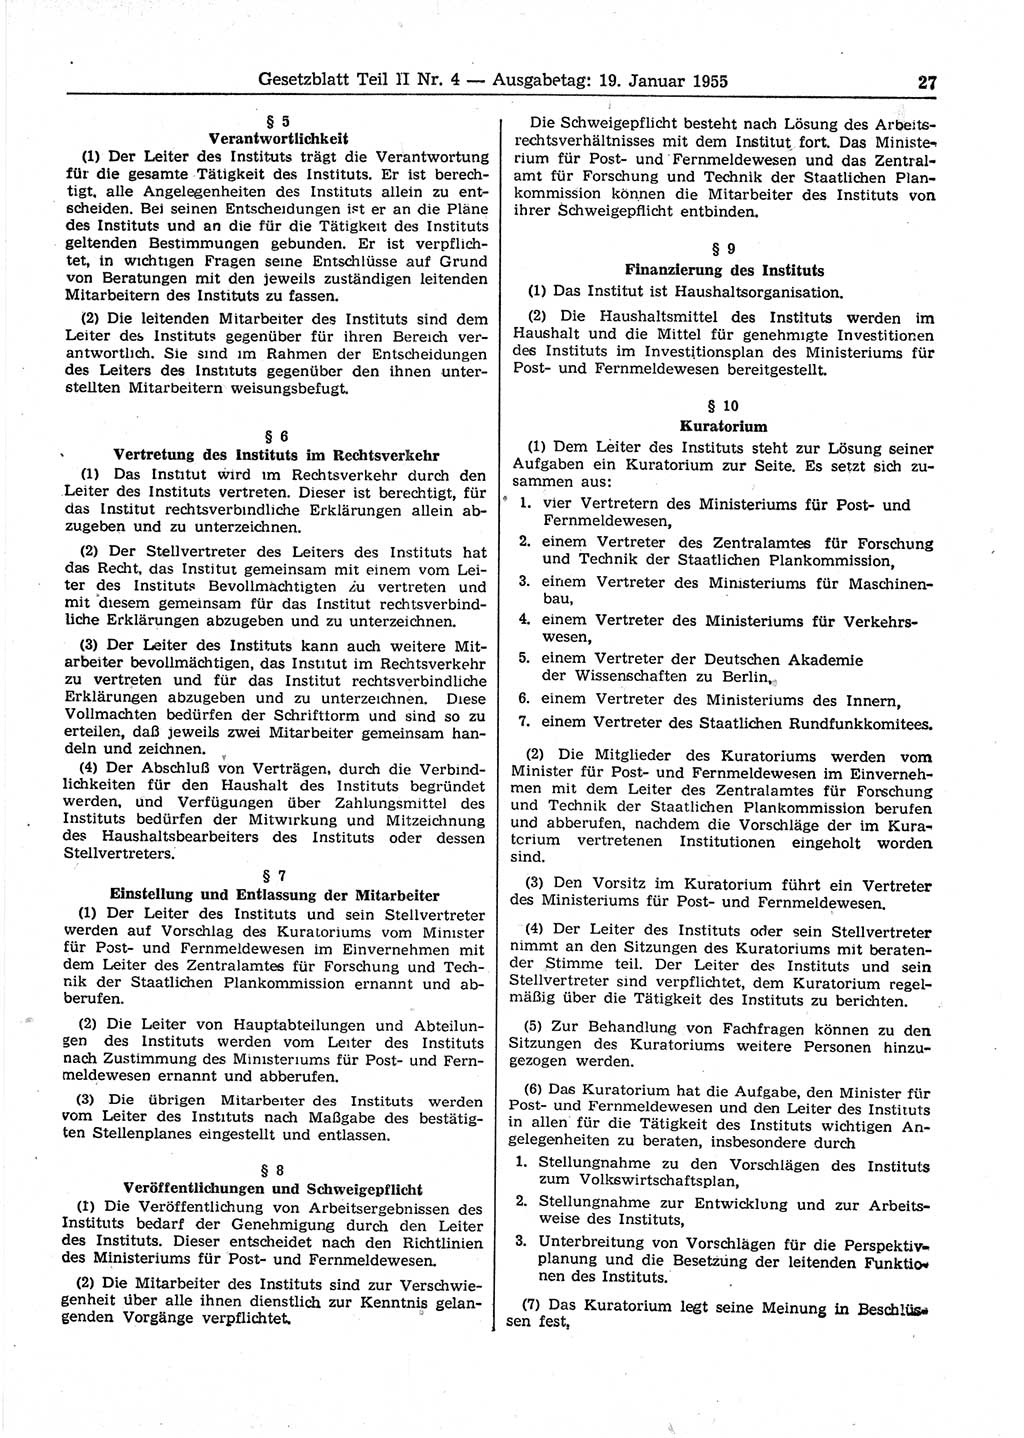 Gesetzblatt (GBl.) der Deutschen Demokratischen Republik (DDR) Teil ⅠⅠ 1955, Seite 27 (GBl. DDR ⅠⅠ 1955, S. 27)